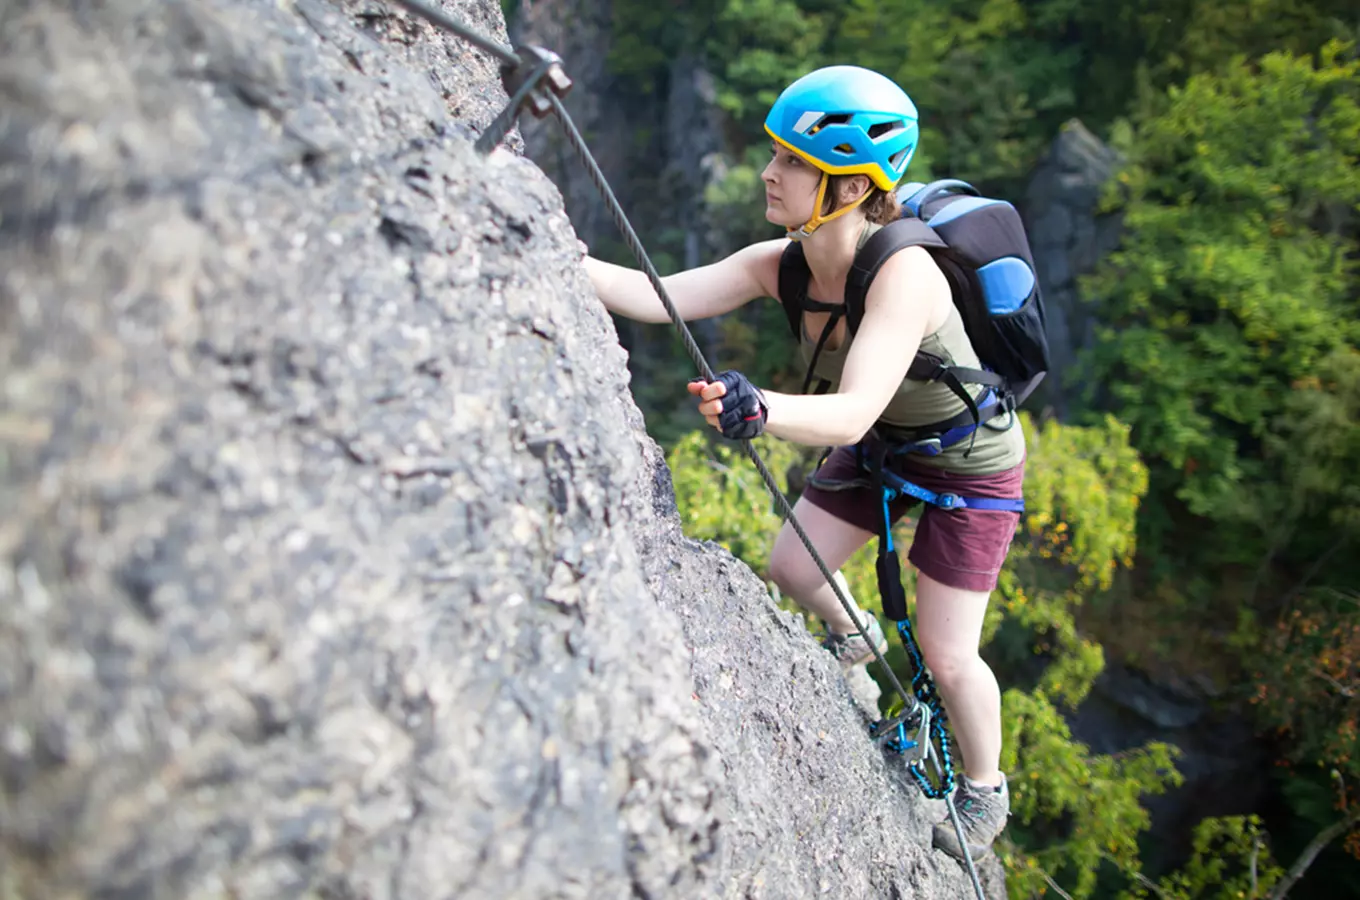 Tipy, kam na skály a skalky pro horolezce – zajímavé lezecké terény z celého Česka